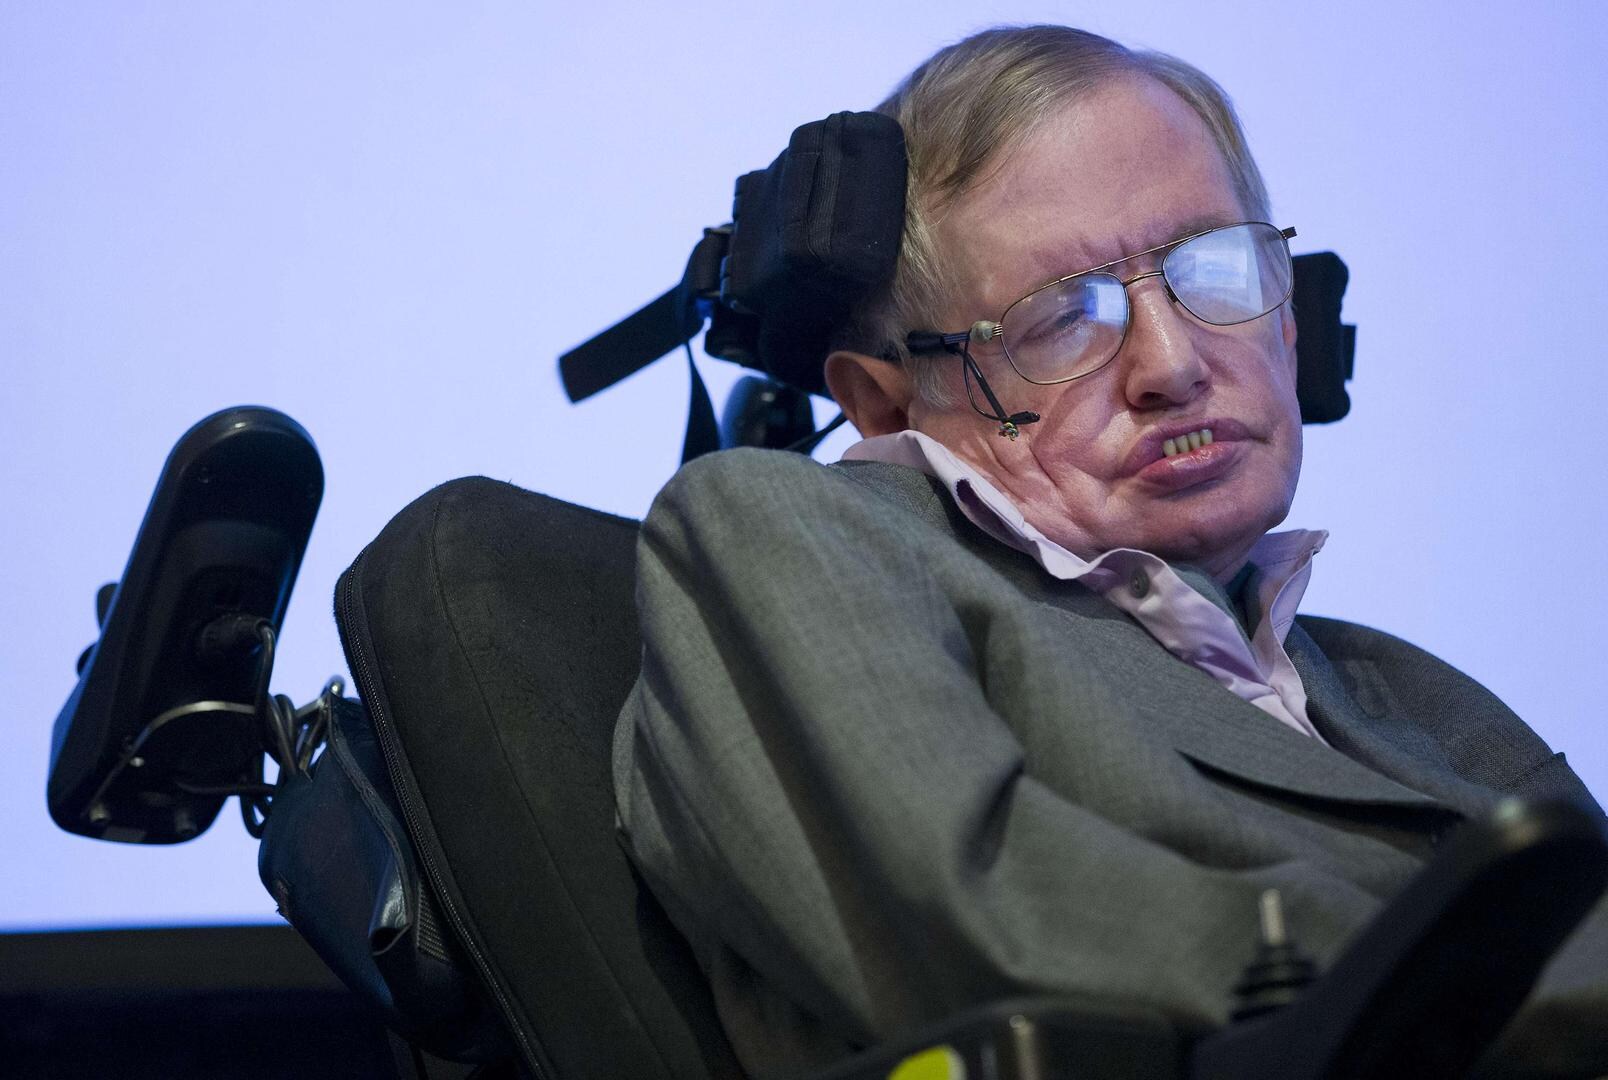 Stephen Hawking: “Aarde zal tegen 2600 grote vuurbal worden. Maar er is een uitweg”